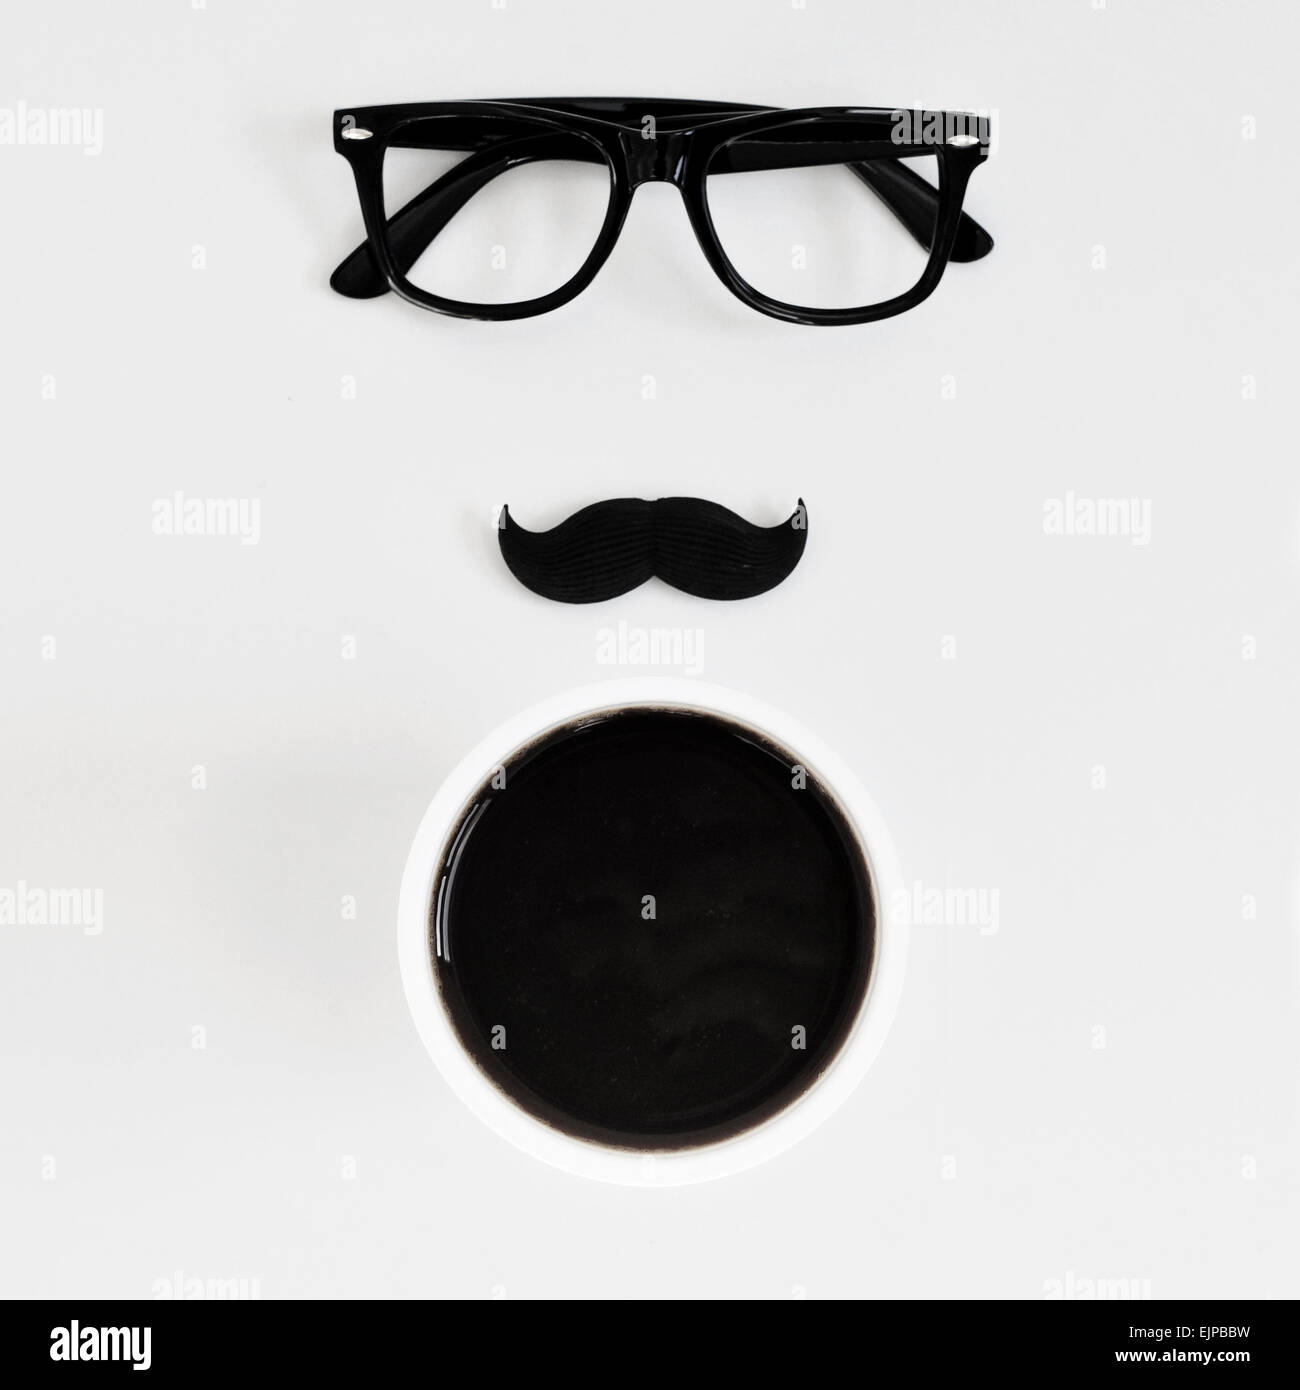 Capture d'un grand angle d'un tableau blanc avec une paire de lunettes cerclées de noir en plastique, une fausse moustache et une tasse de café, représentant Banque D'Images